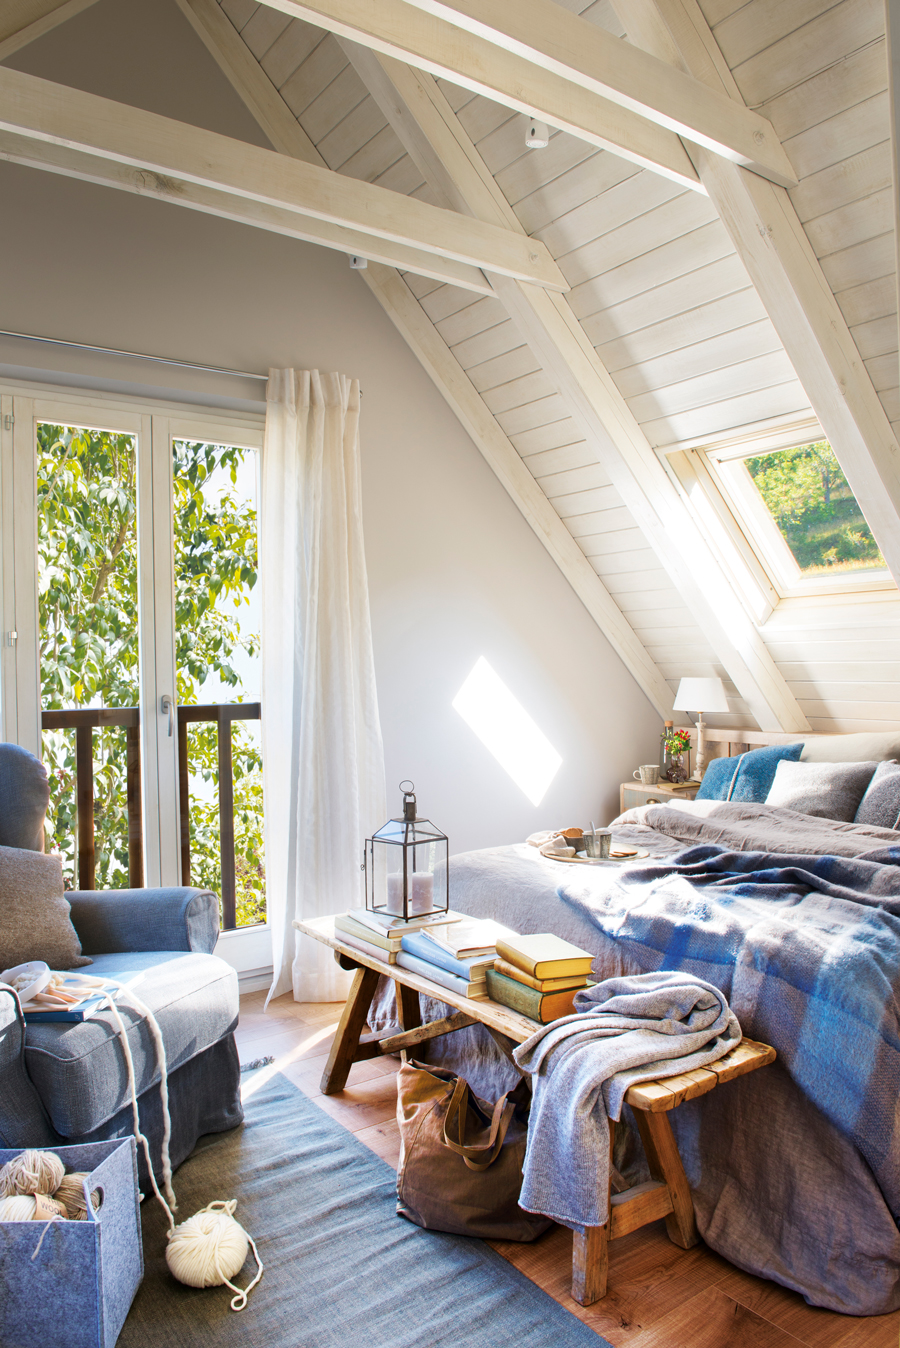 Dormitorio abuhardillado blanco con textiles azules y grises